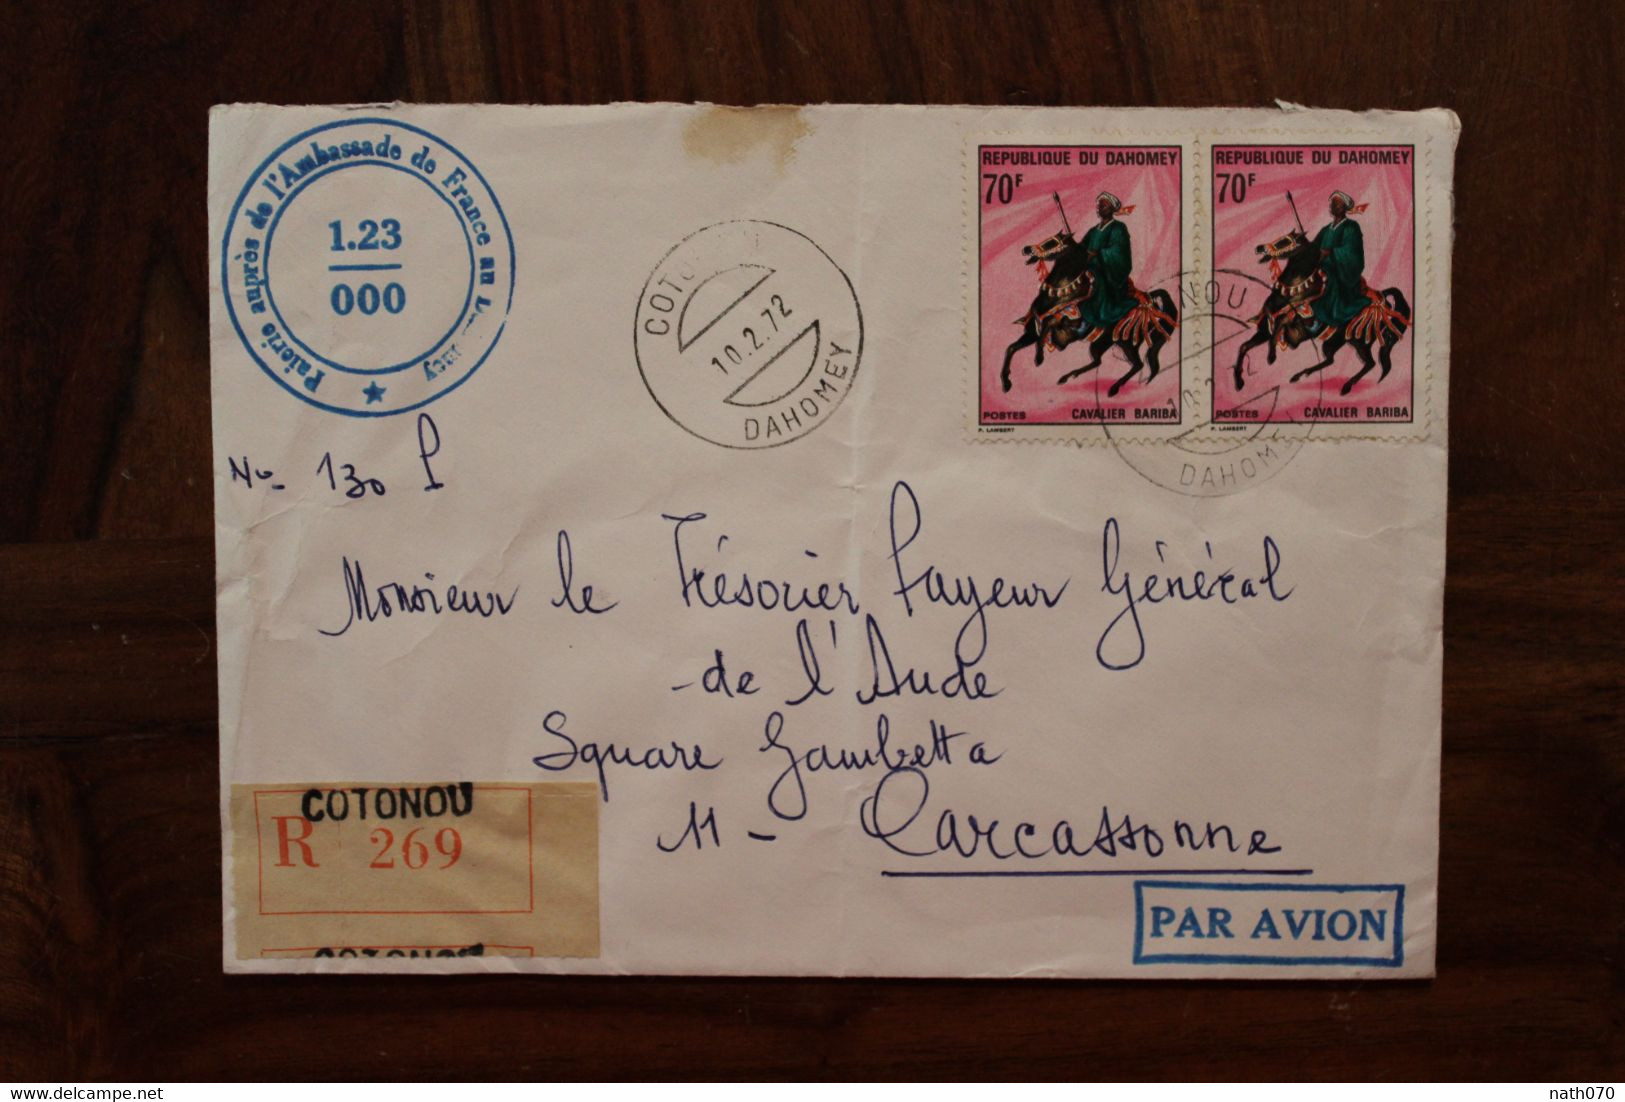 1972 Dahomey Bénin Ambassade De France Pour Carcassonne Enveloppe Cover Recommandé Registered Reco - Bénin – Dahomey (1960-...)